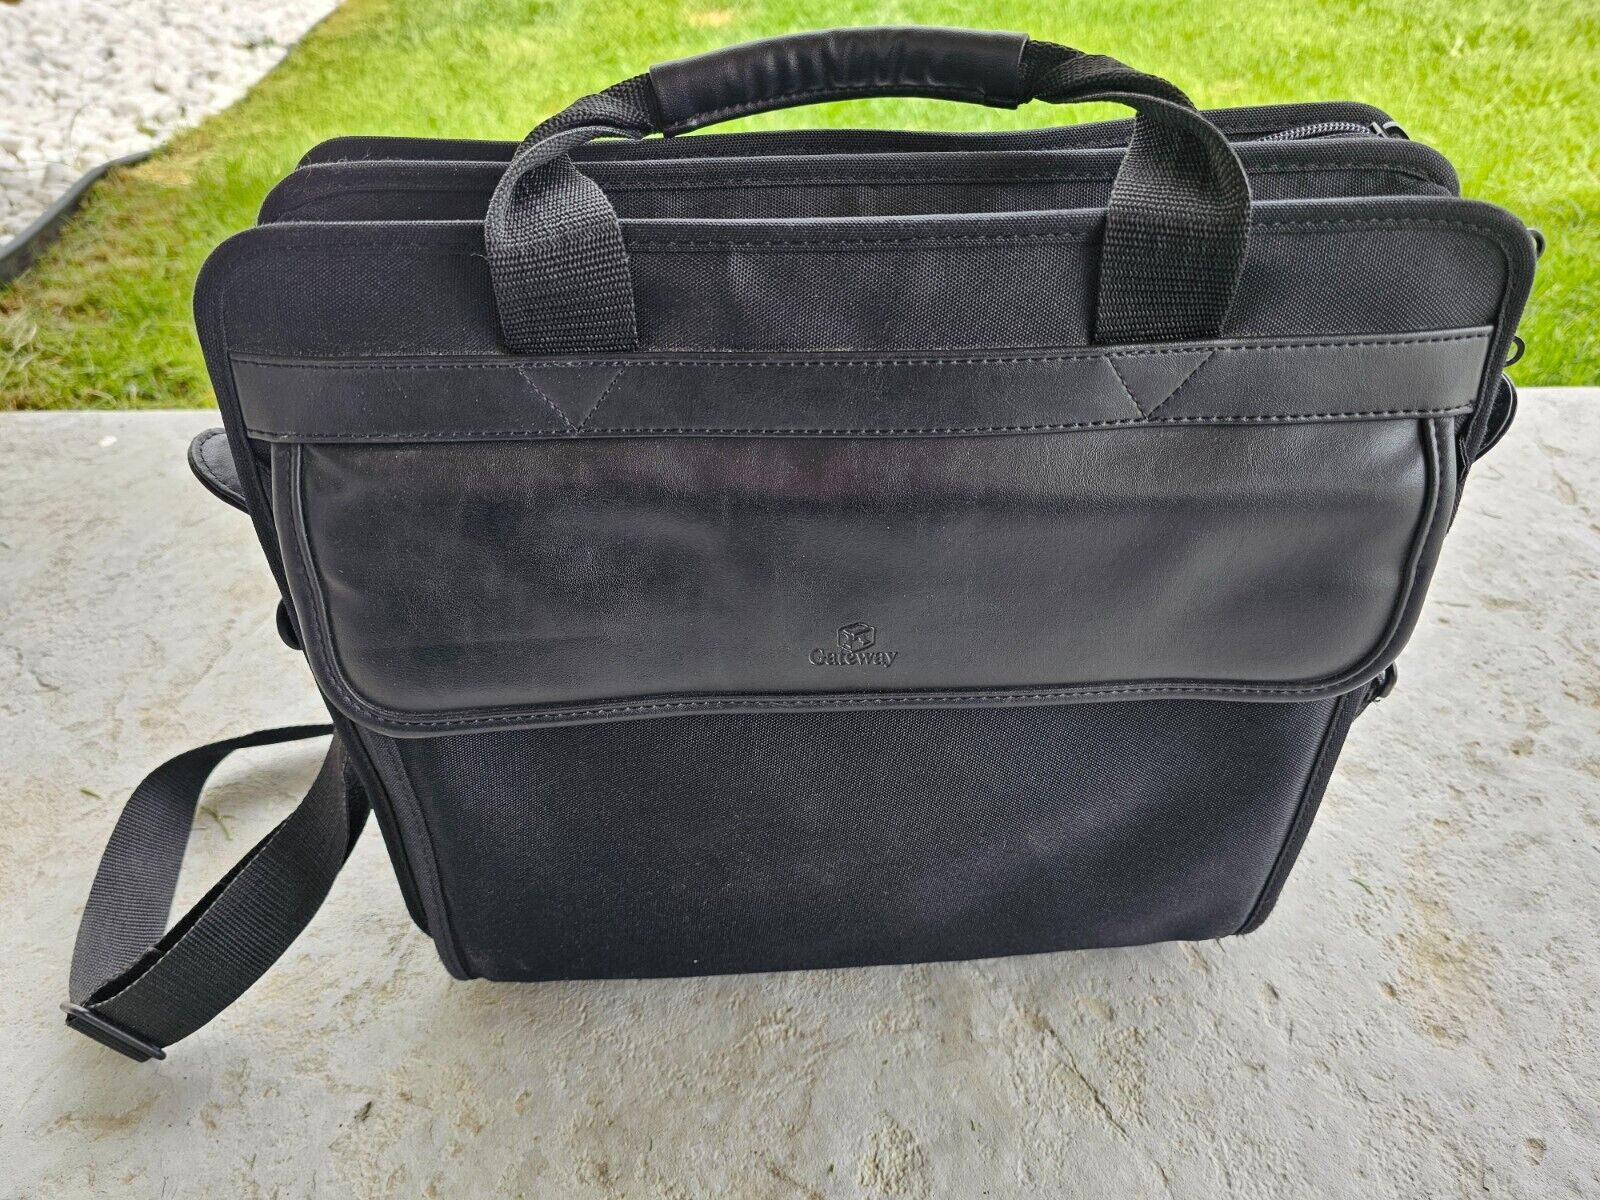 Gateway Laptop Bag Carrying Case 15” w/ Shoulder Strap - Vintage